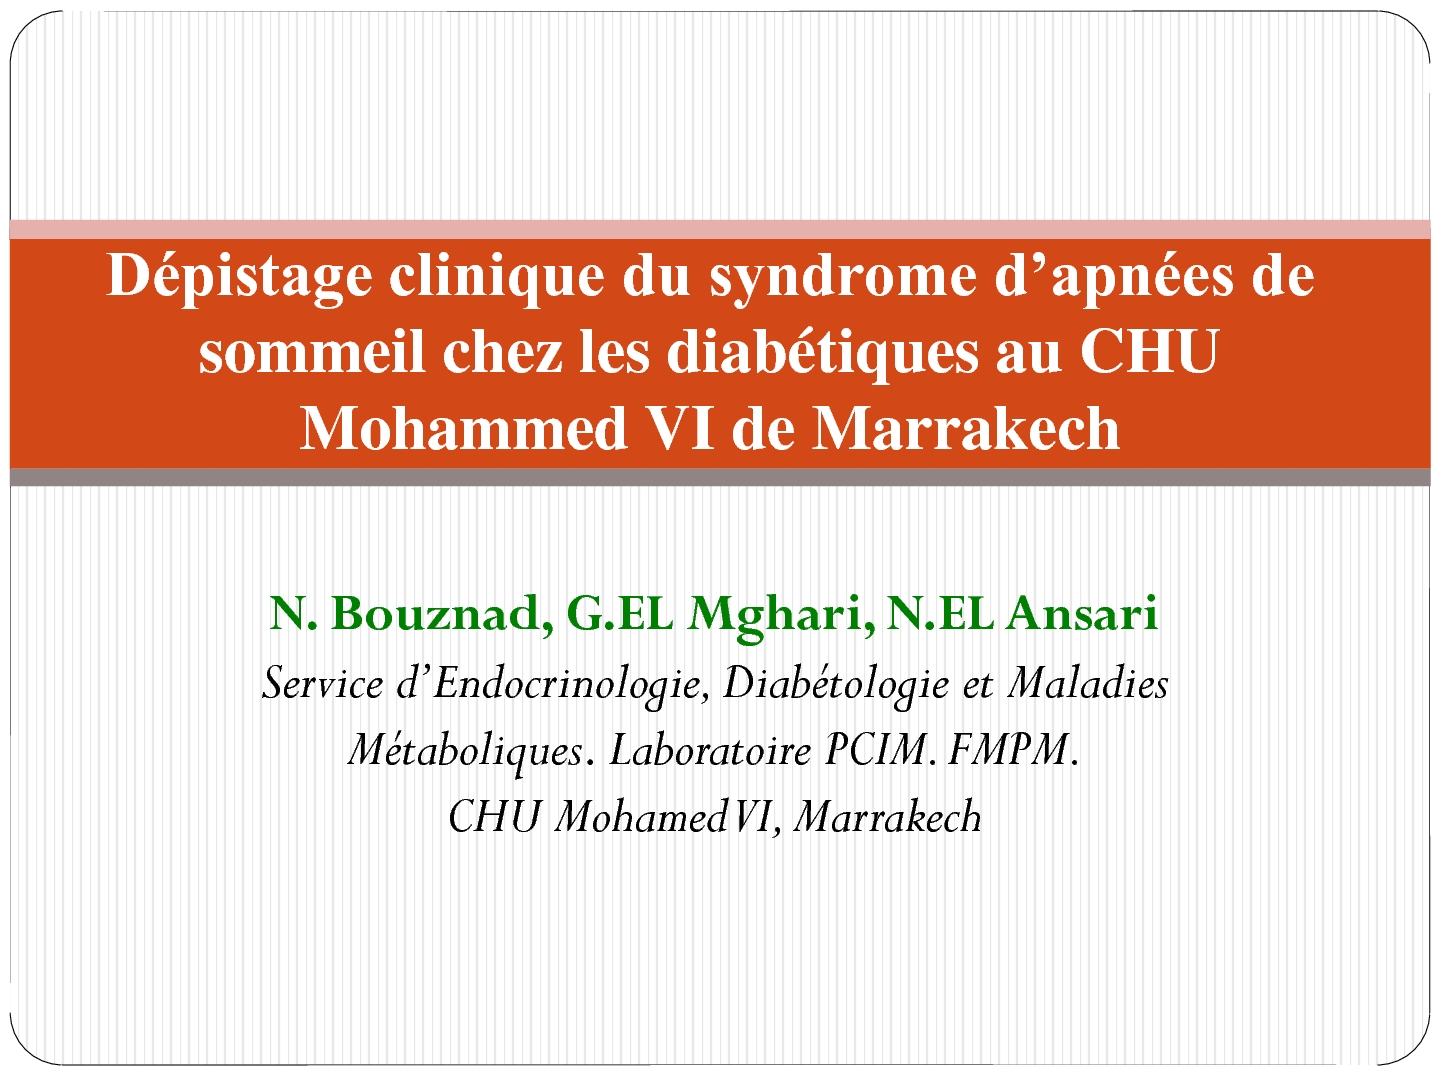 Dépistage clinique du syndrome d'apnées de sommeil chez les diabétiques au CHU Mohammed VI de Marrakech. N. BOUZNAD